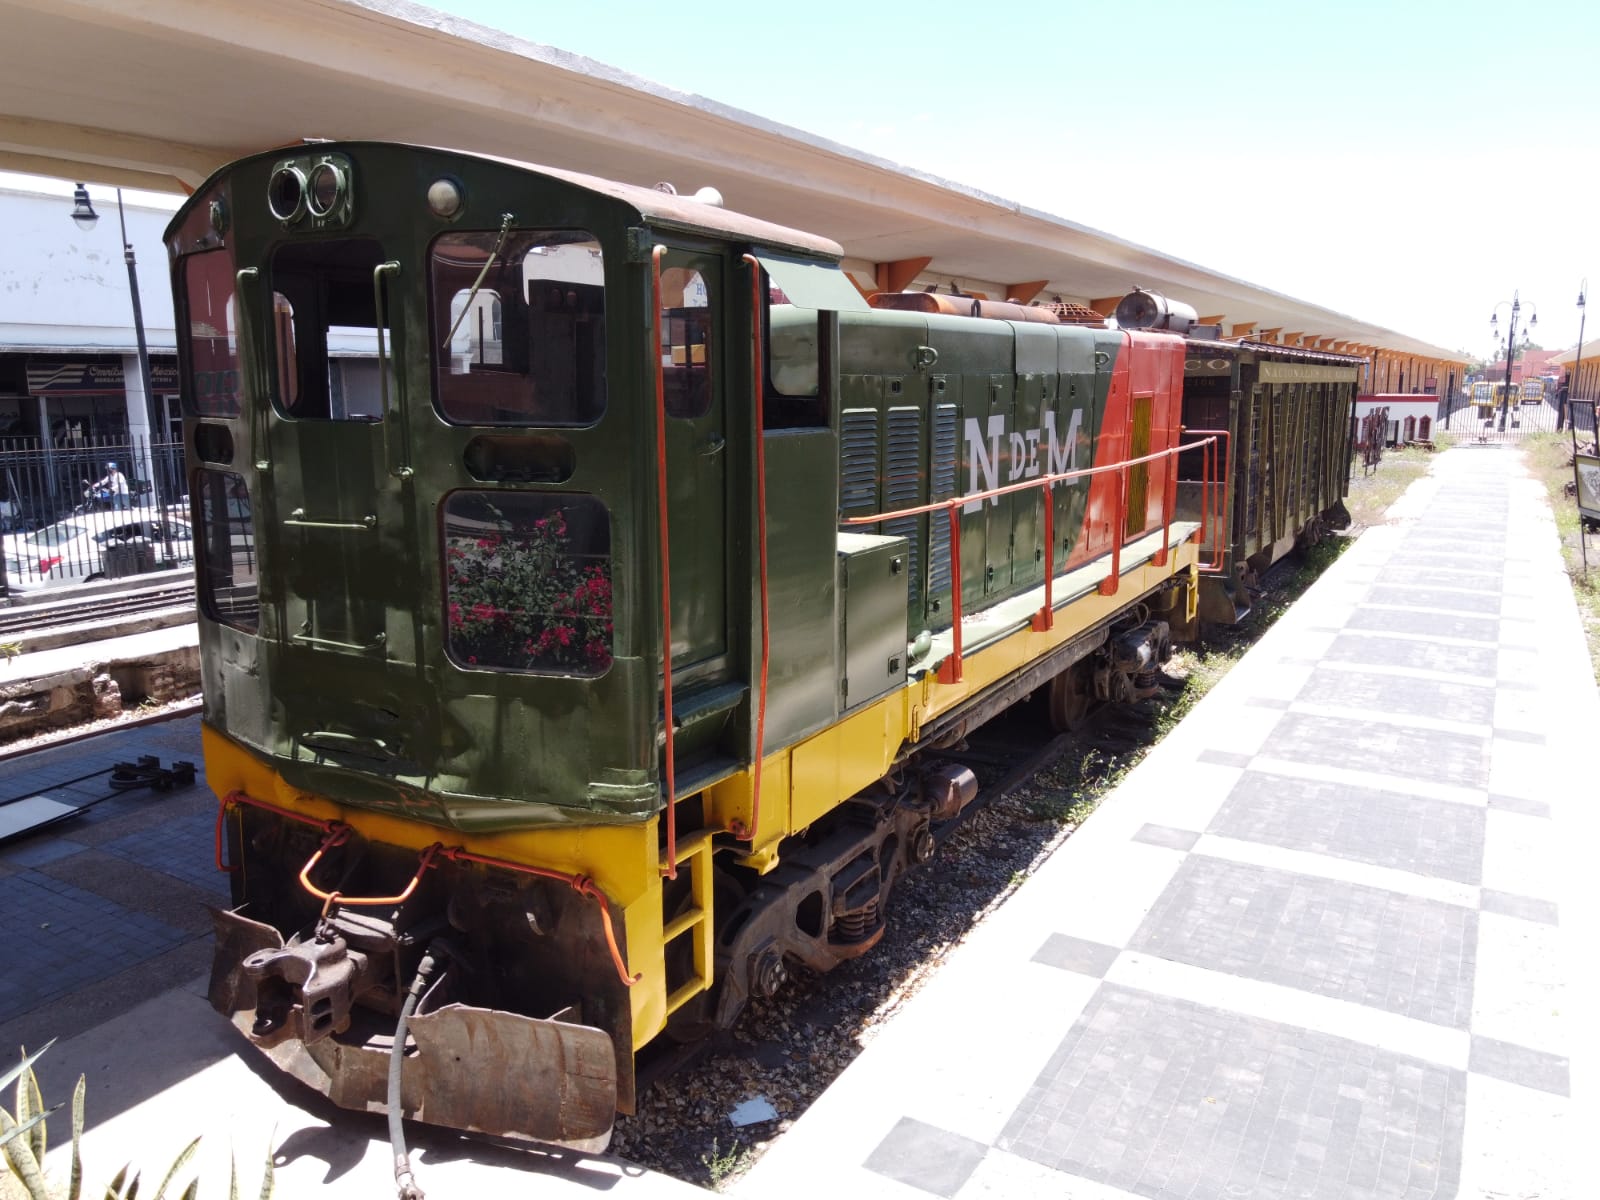 Exposición “Vagón de la ciencia” en el Museo del Ferrocarril